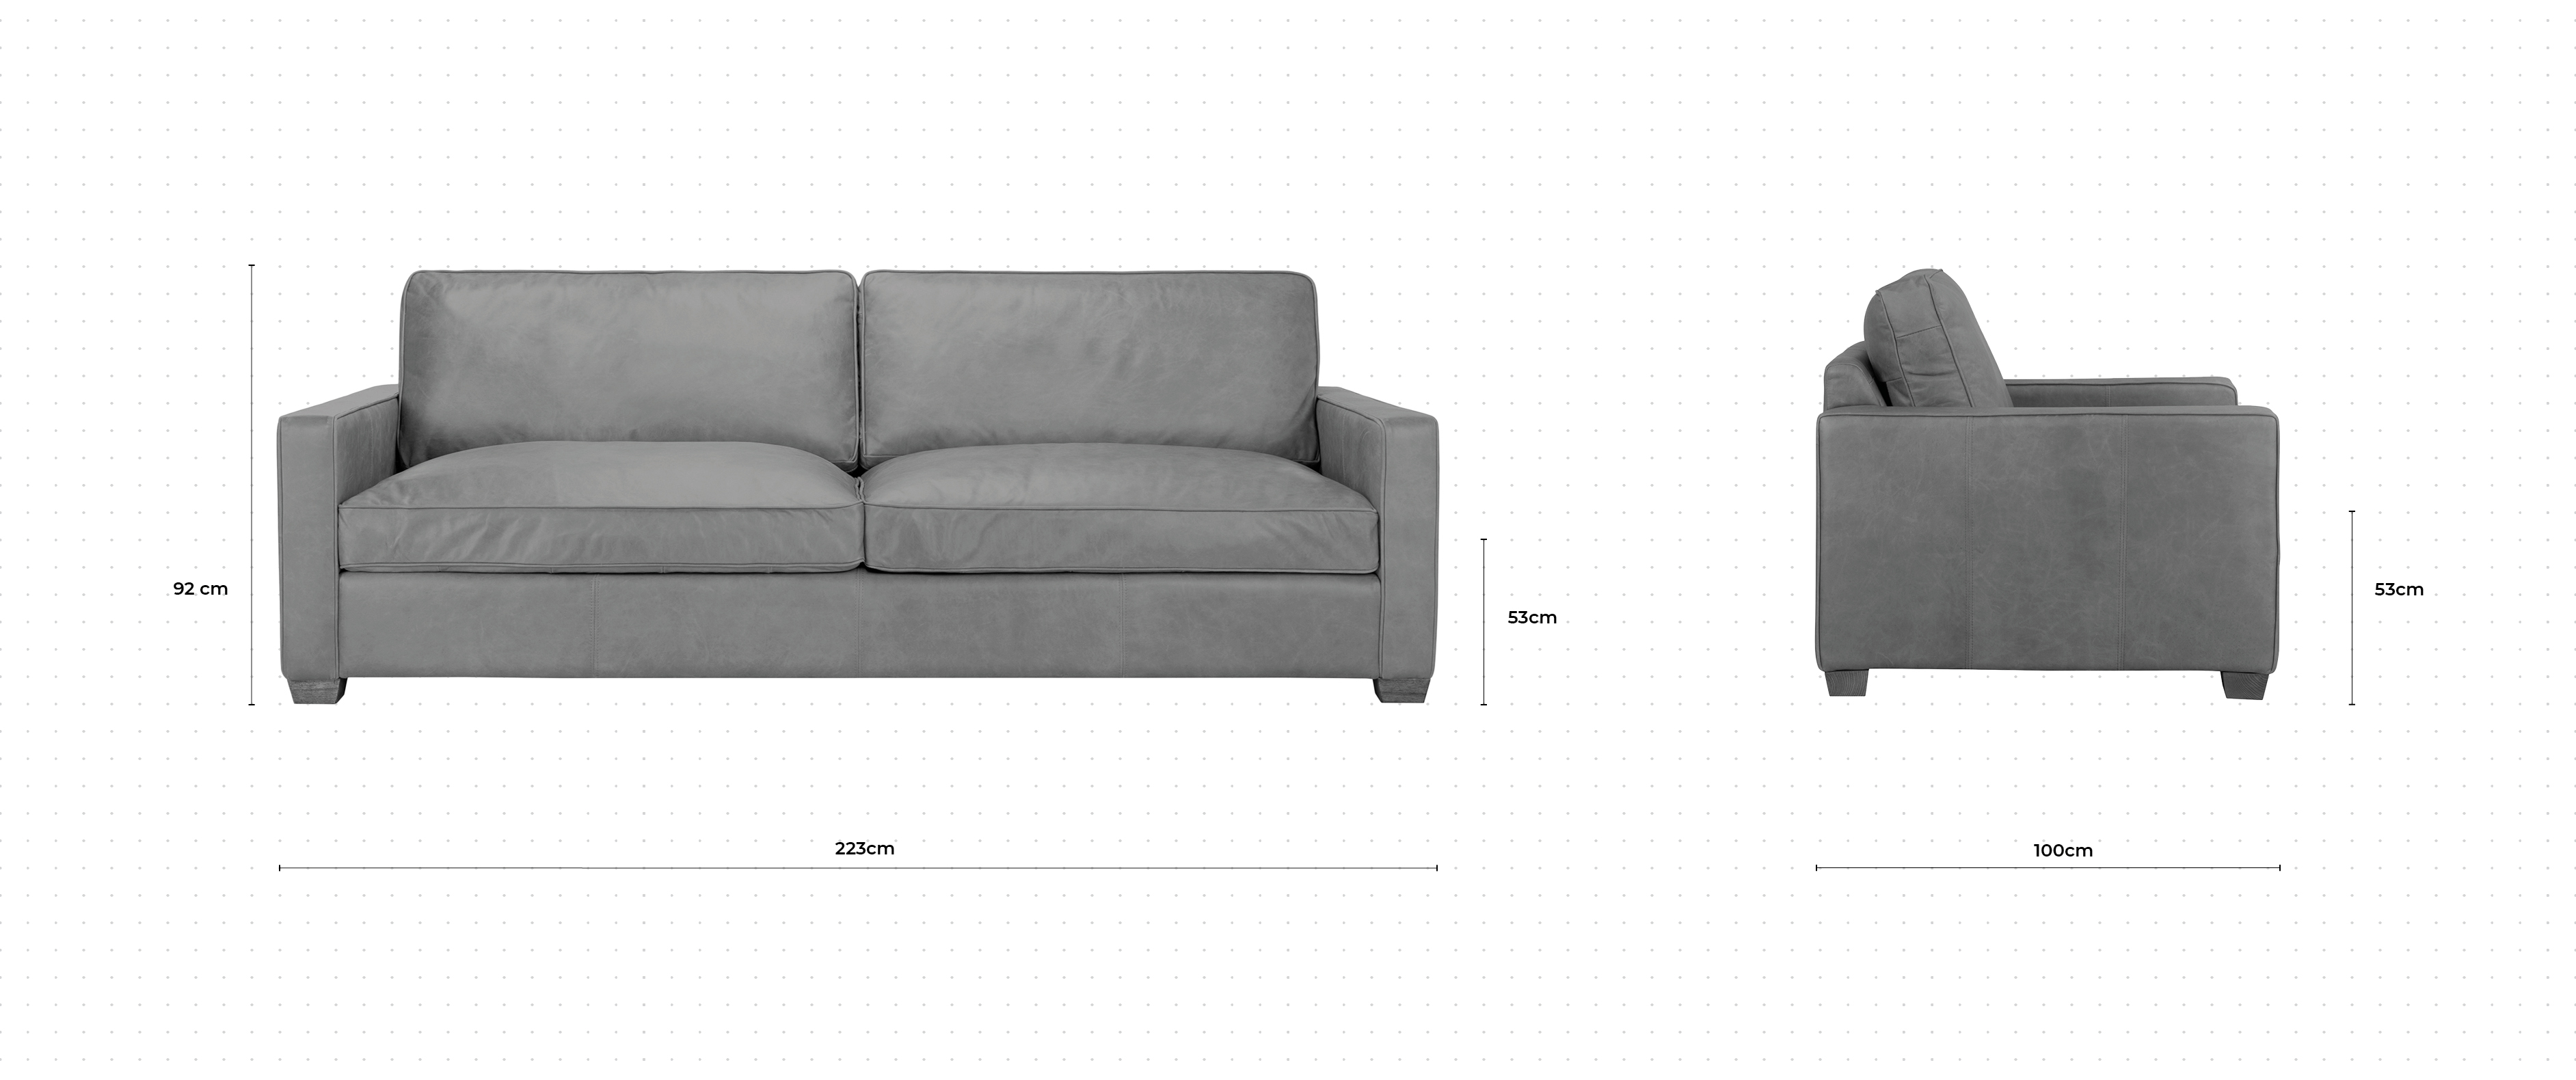 Blake 3 Seater Sofa dimensions